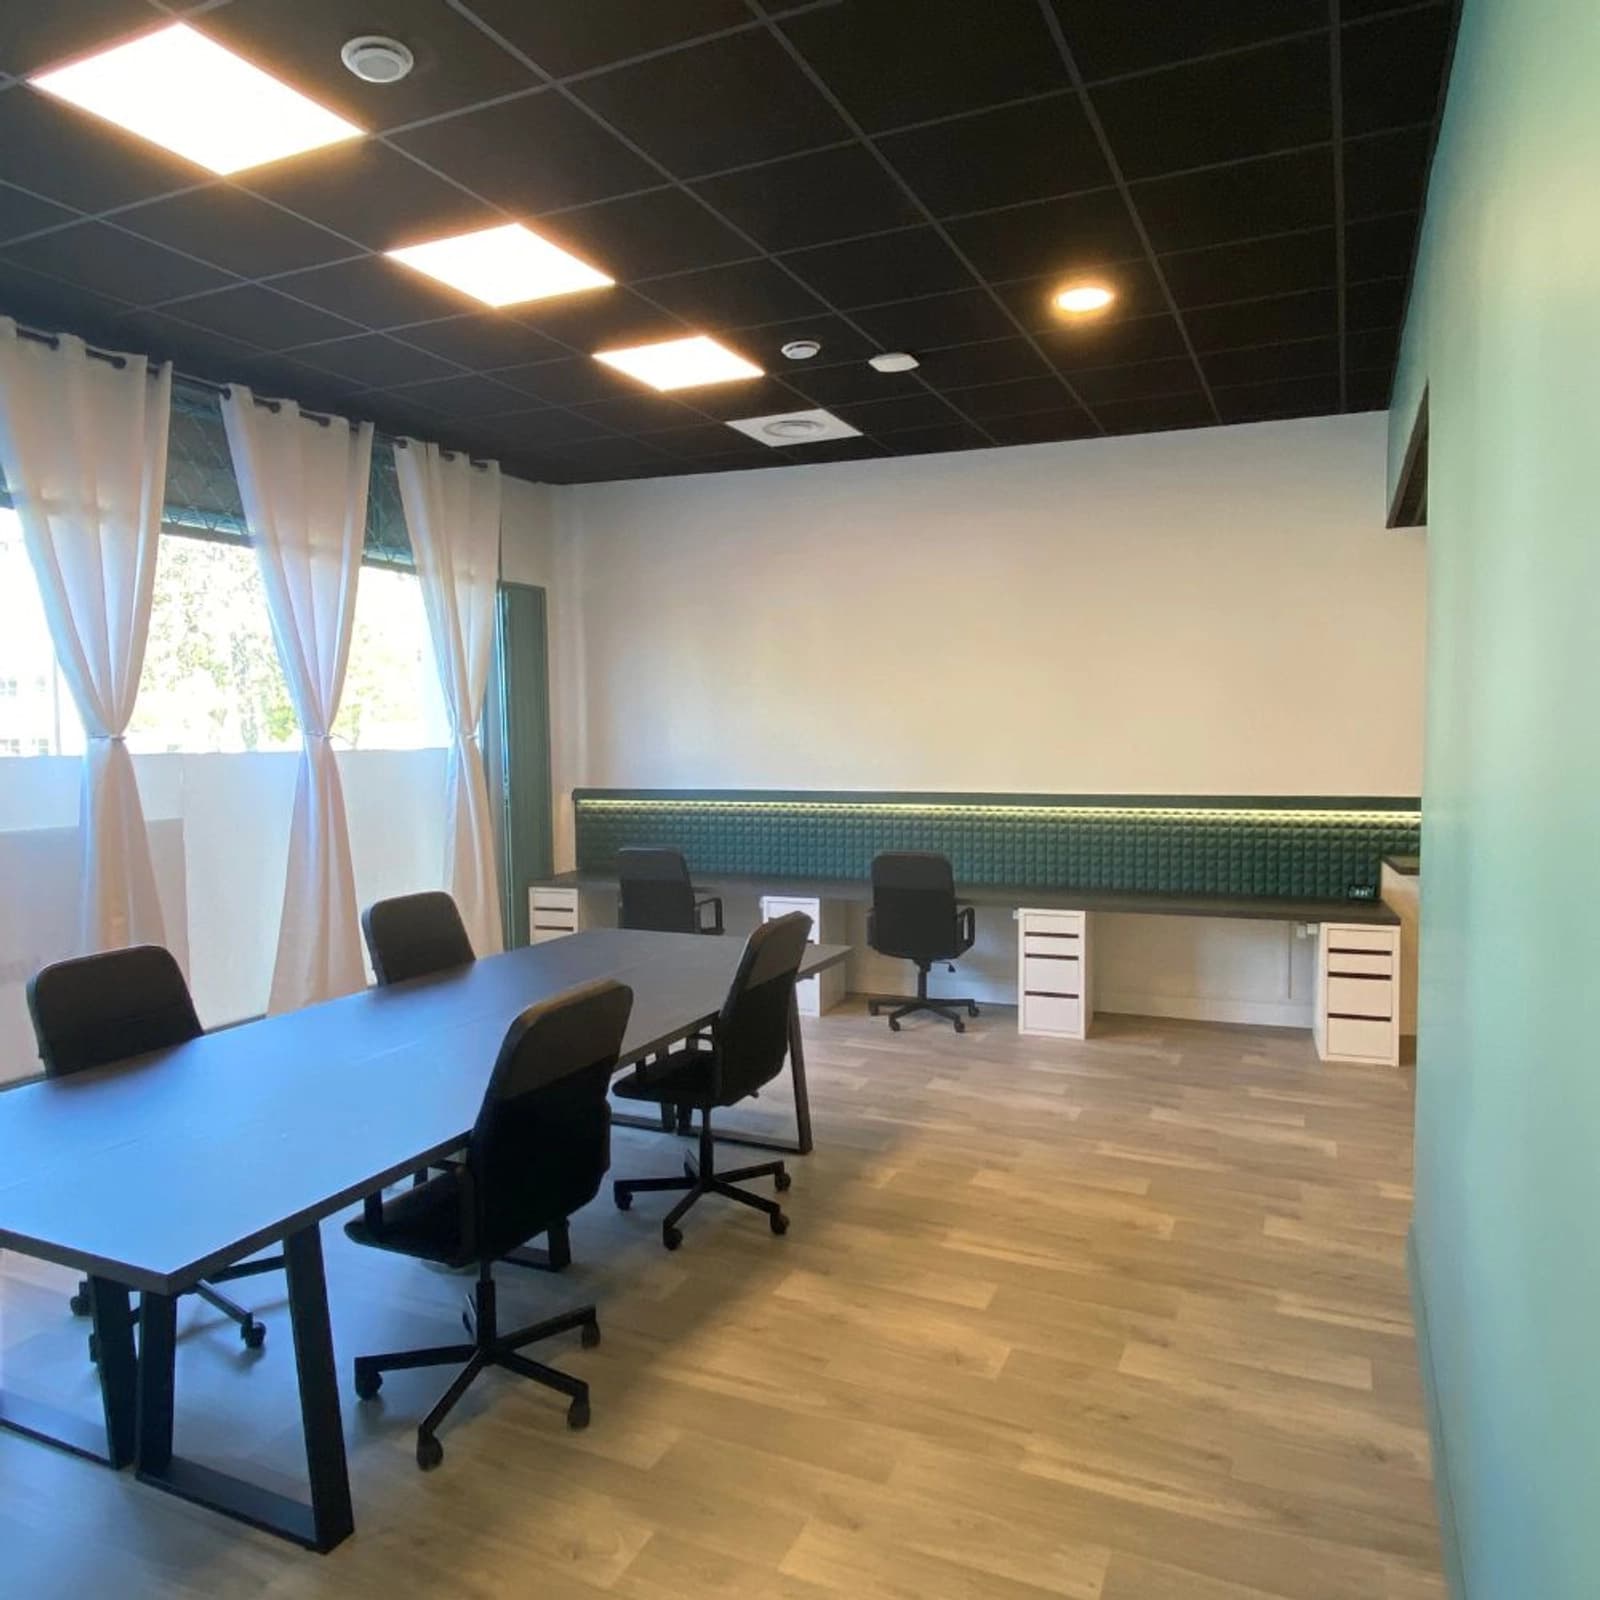 Meeting room in Bright, modern workspace - 1